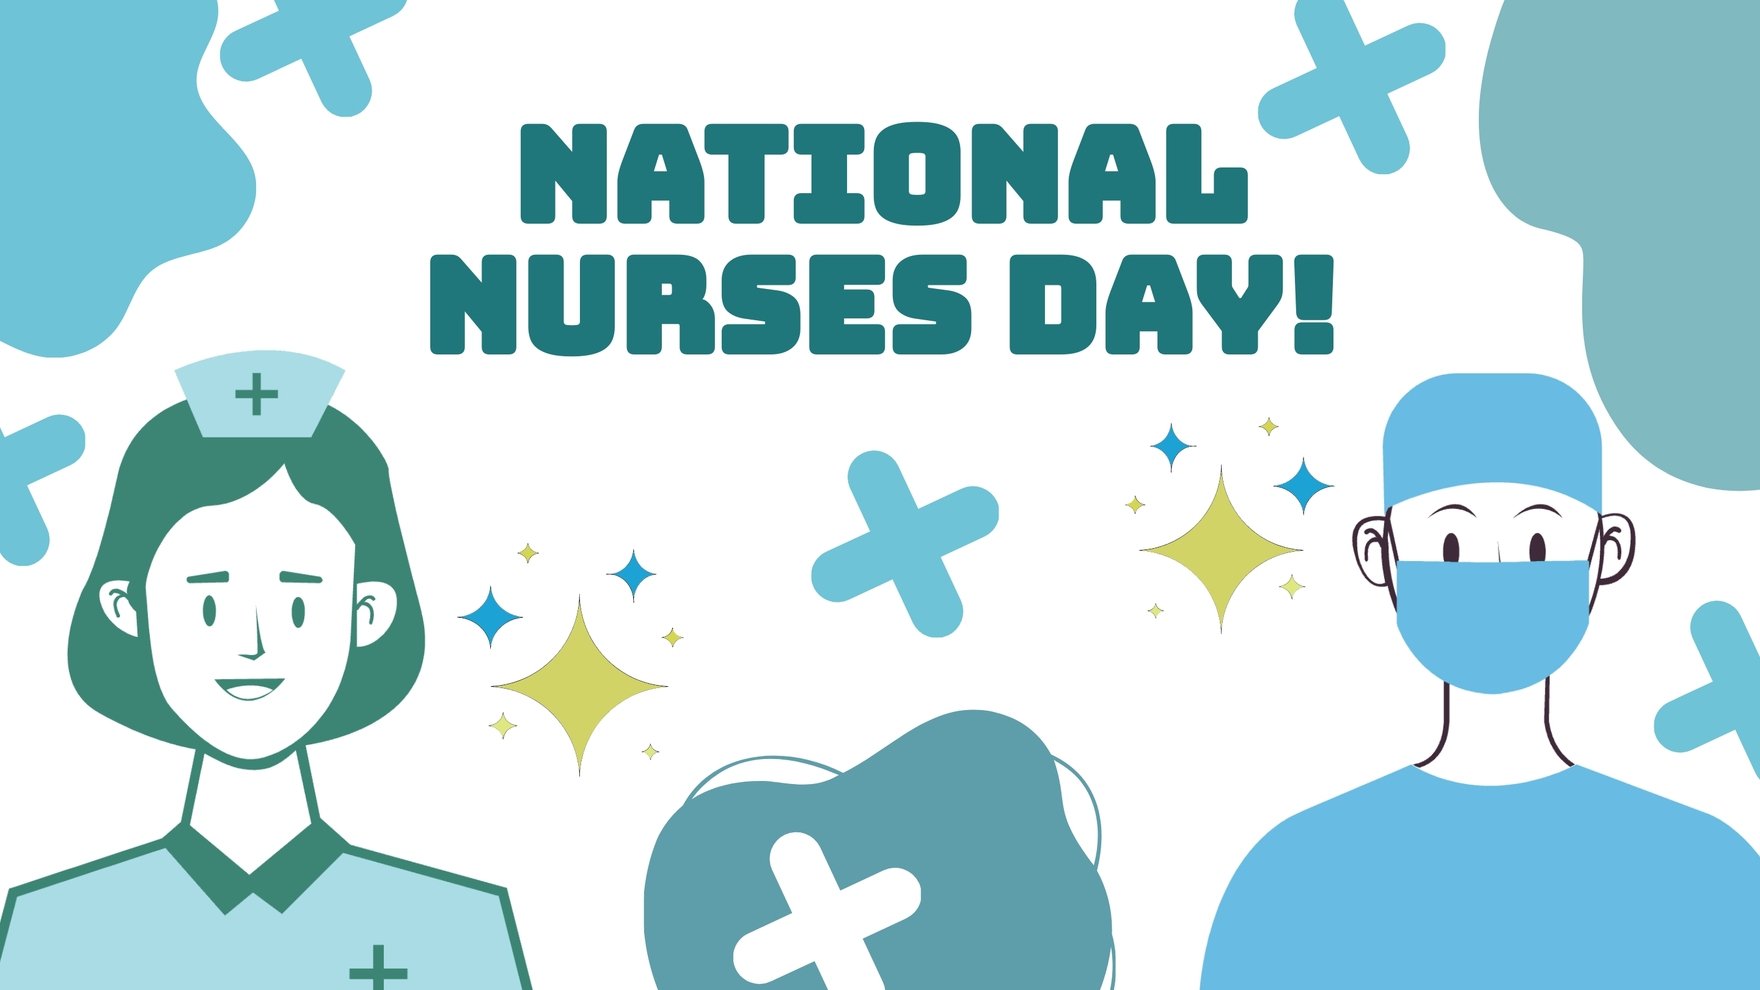 National Nurses Day Vector Background in PDF, Illustrator, PSD, EPS, SVG, JPG, PNG